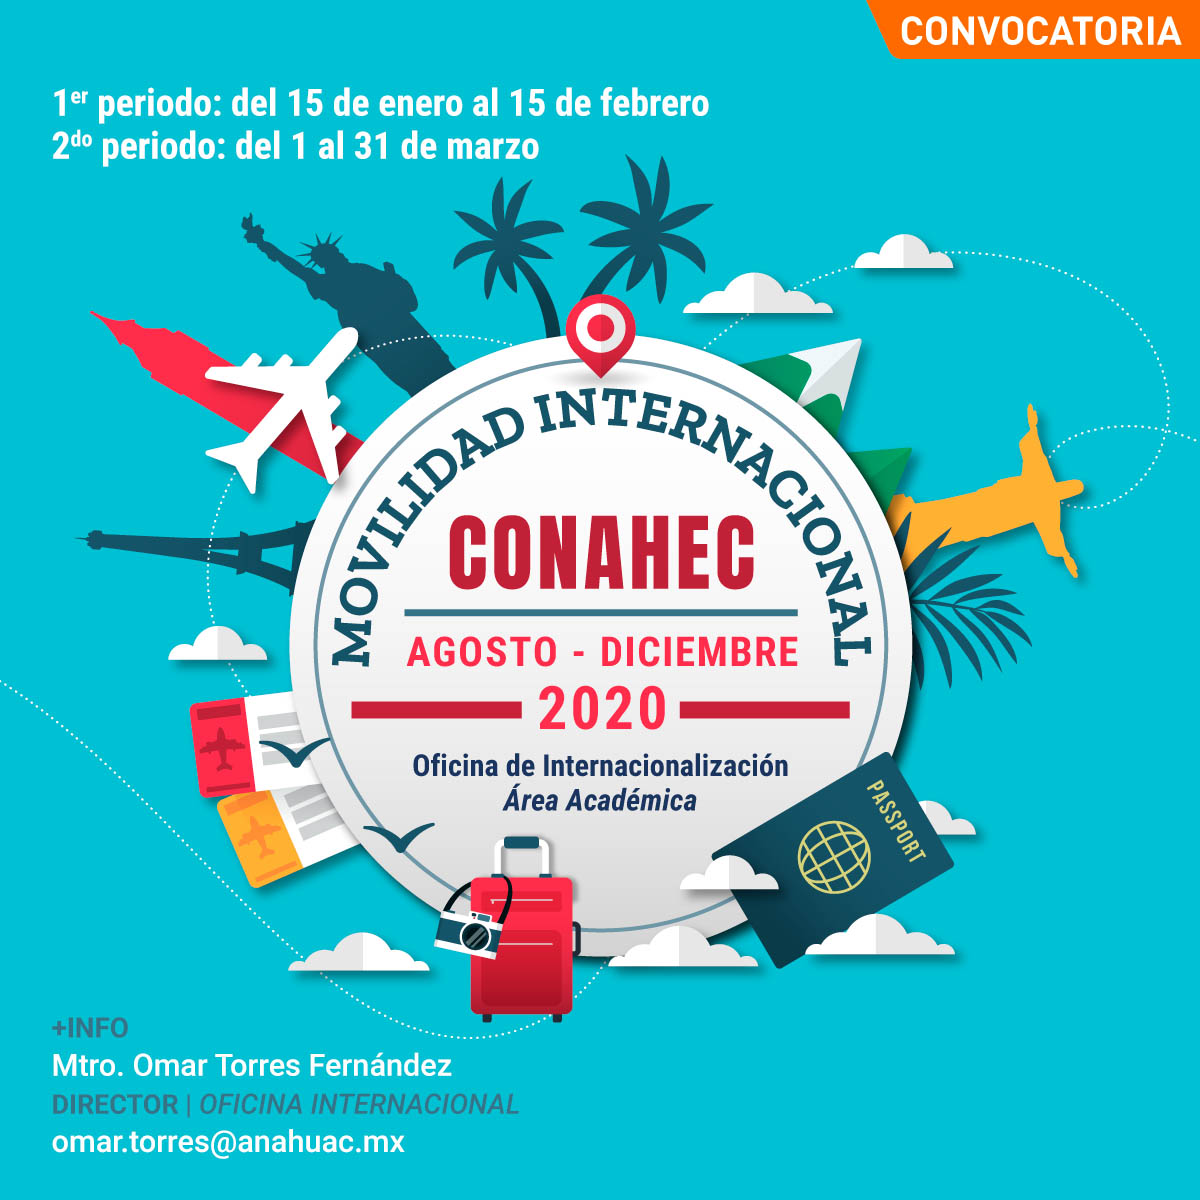 Convocatoria de Movilidad Internacional CONAHEC 2020